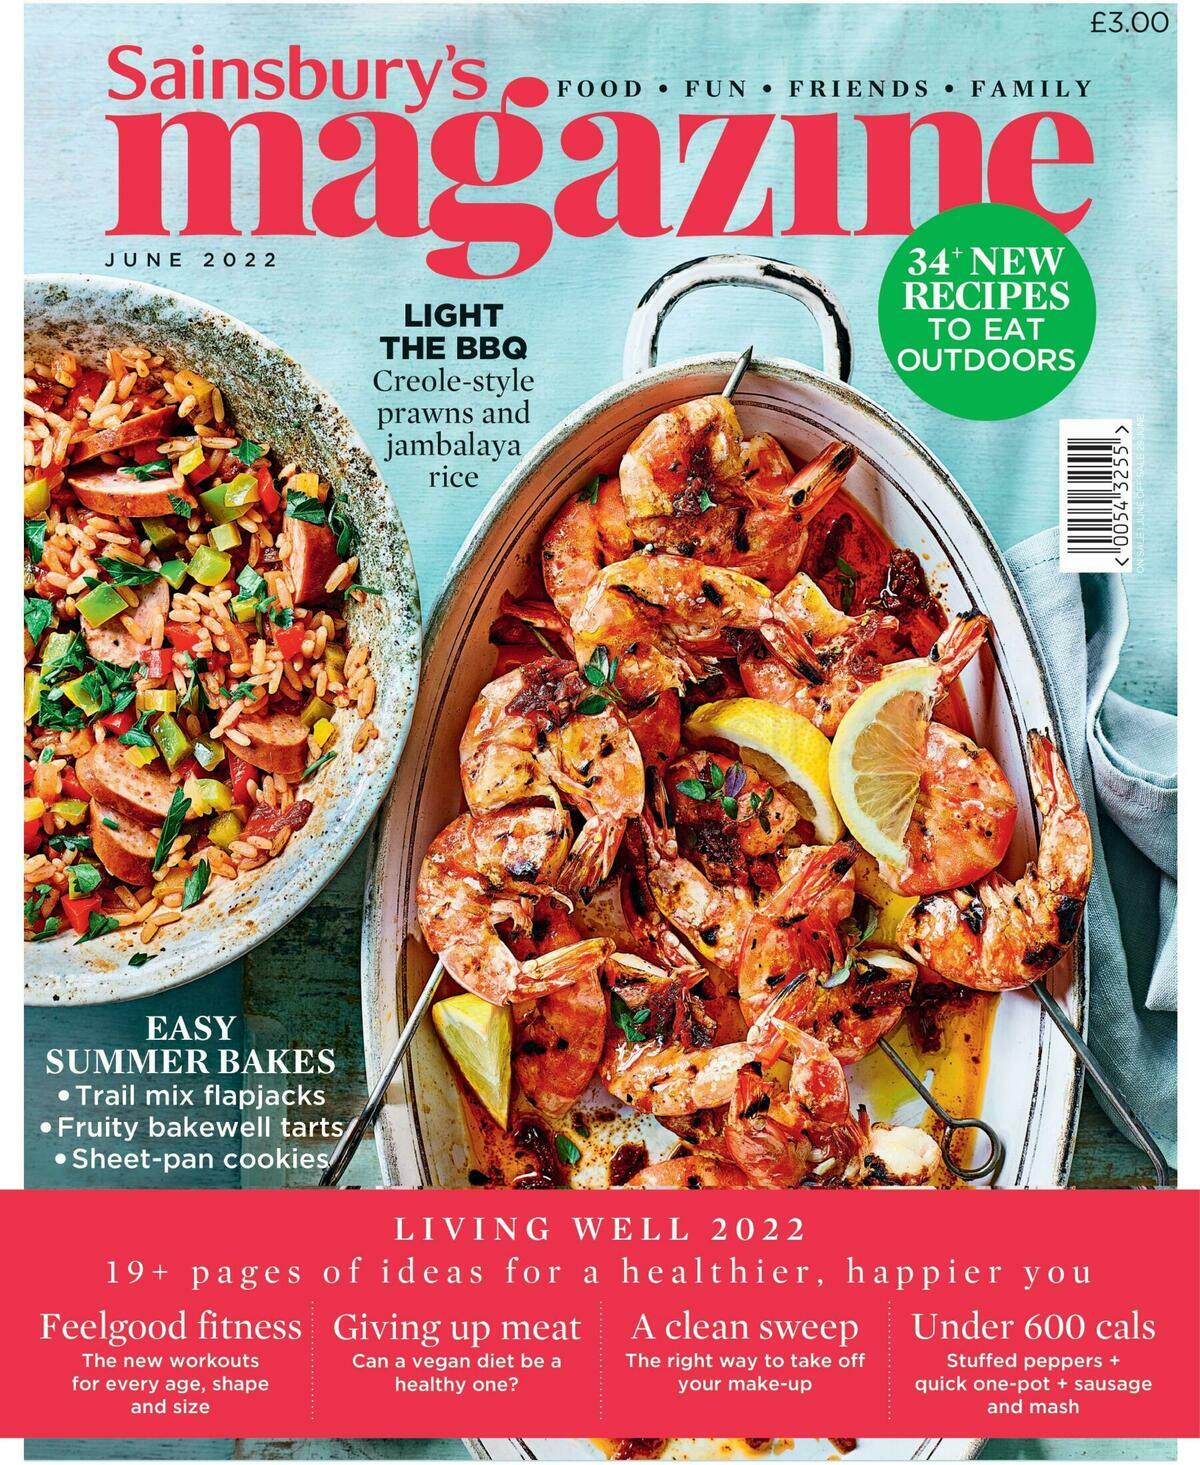 Sainsbury's Magazine June Offers from 1 June